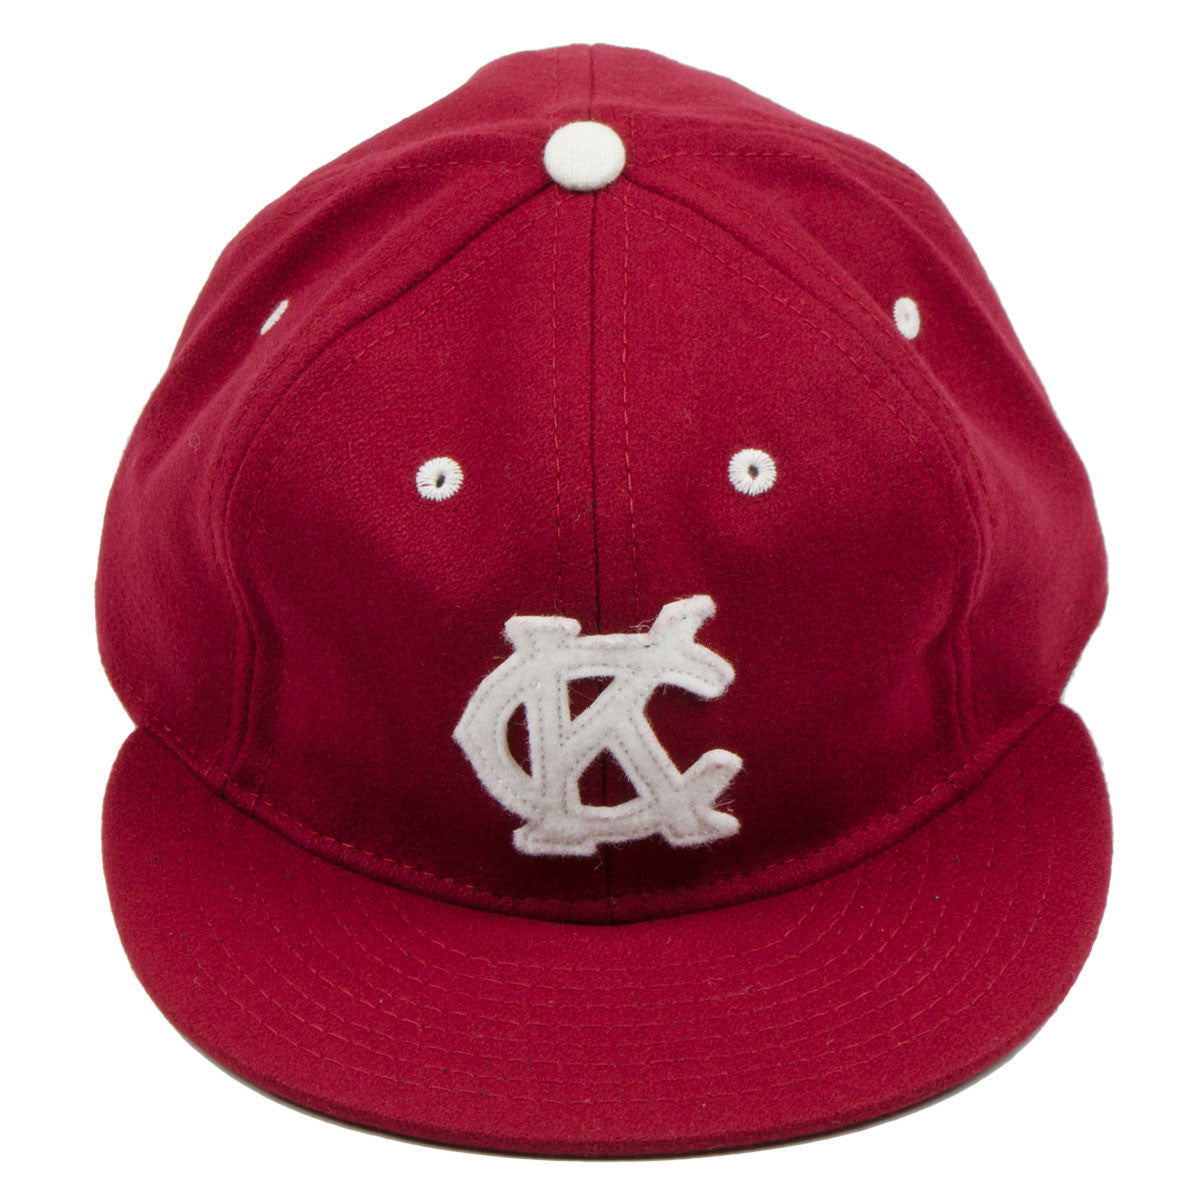 Baldwin KC Kansas City Baseball Cap Hat Fitted 7 1/8 Size Wool Blend Flannel